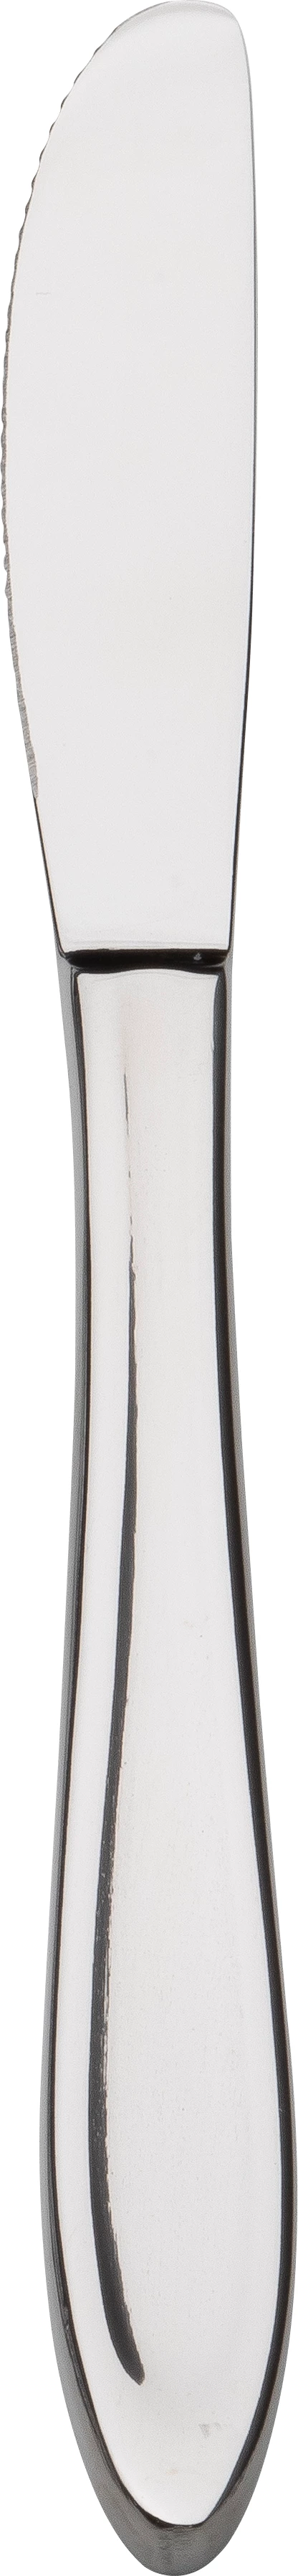 P1 frokostkniv, 19 cm